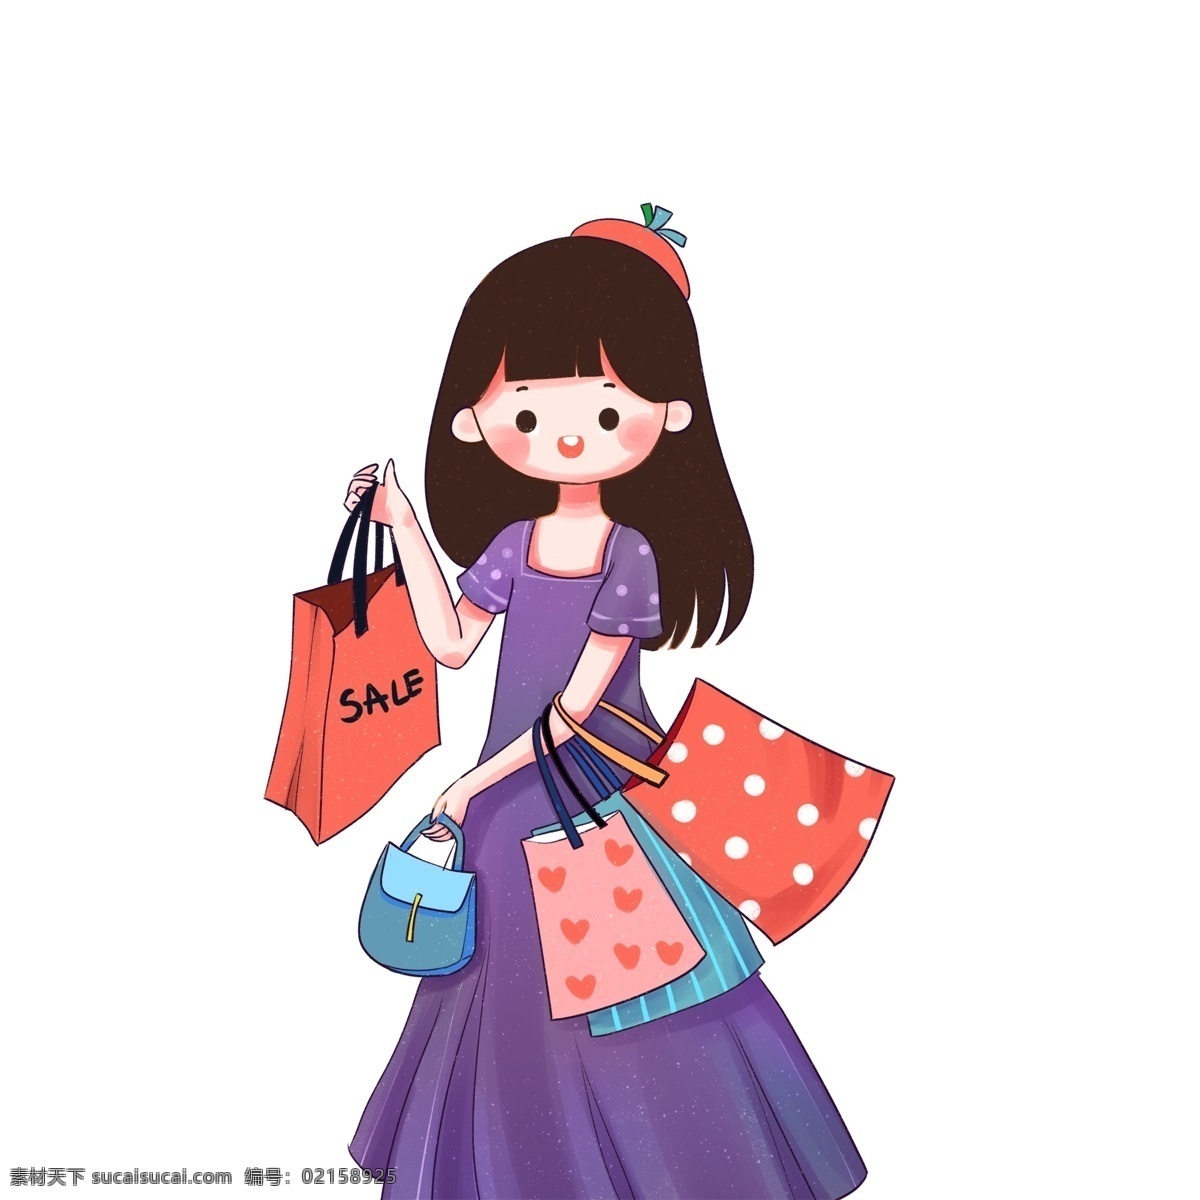 提 购物袋 女孩 图案 时尚女孩 购物女孩 女孩图案 元素设计 创意元素 手绘元素 卡通人物